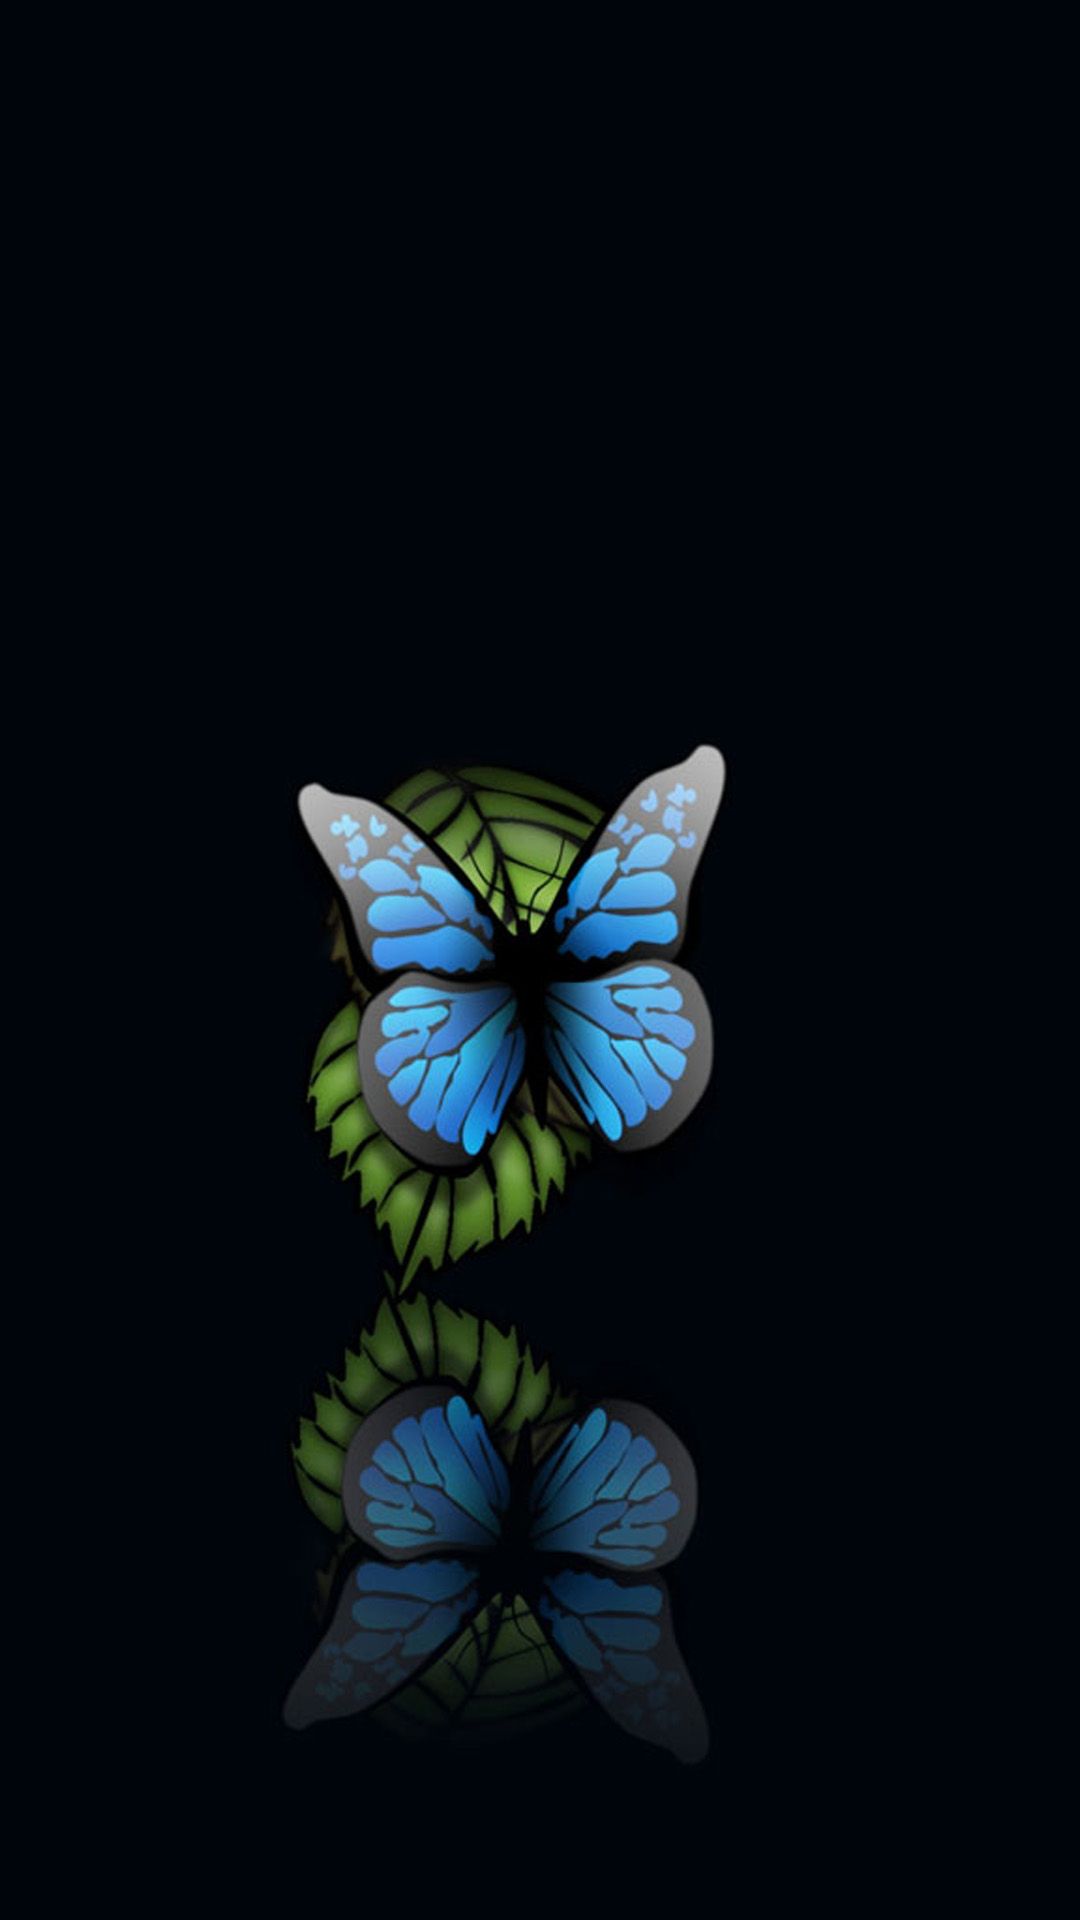 تصویر جذاب و قشنگ از پروانه آبی با کیفیت فوق العاده 